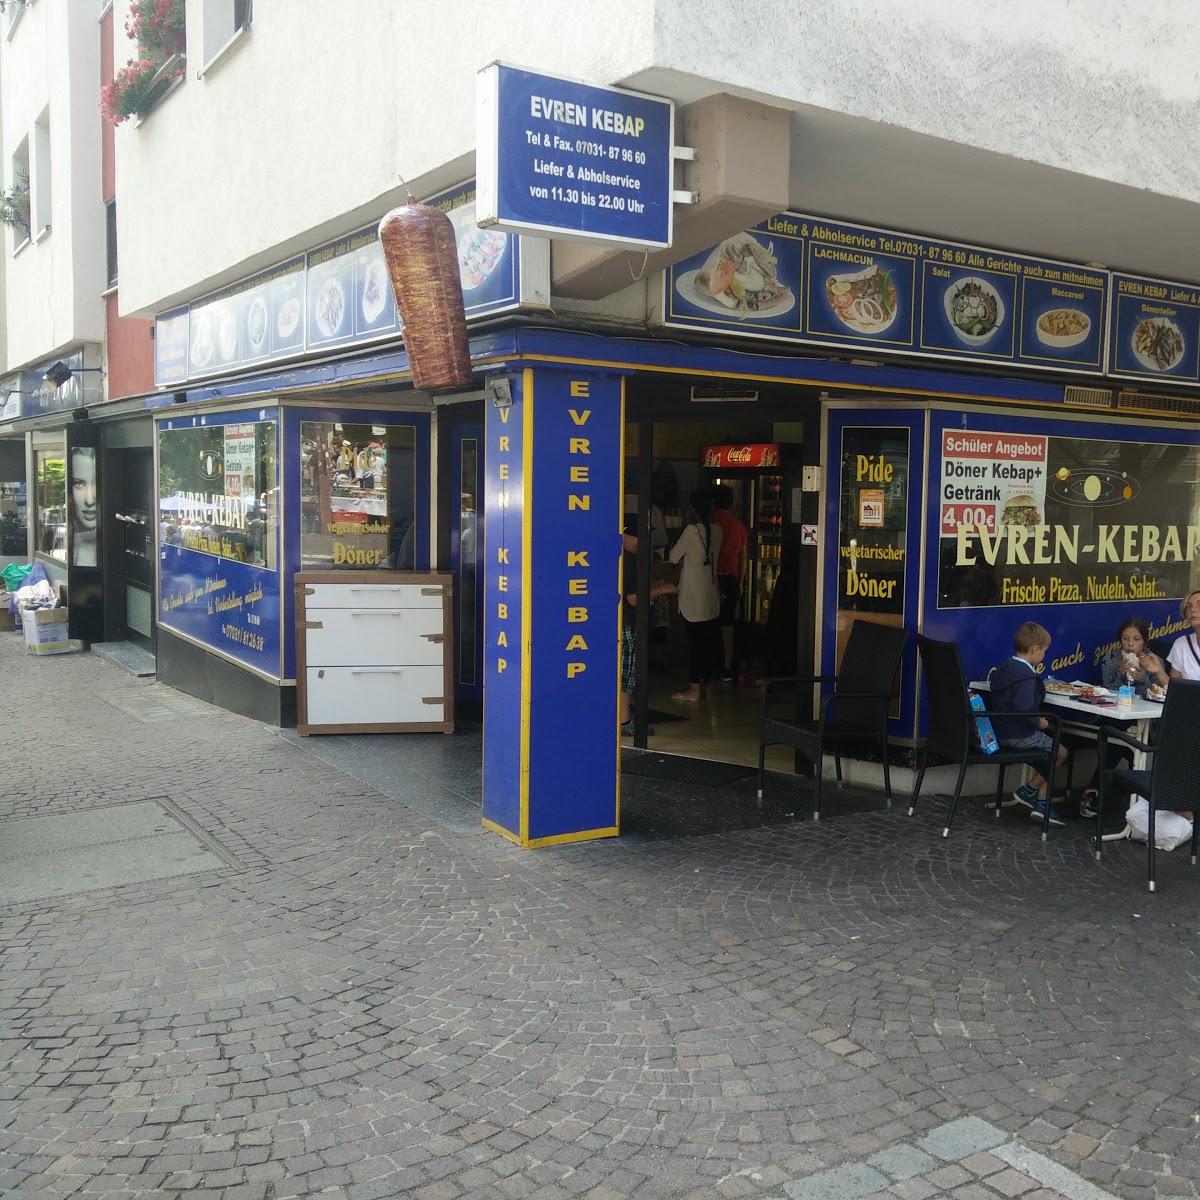 Restaurant "Evren Kebap" in Sindelfingen